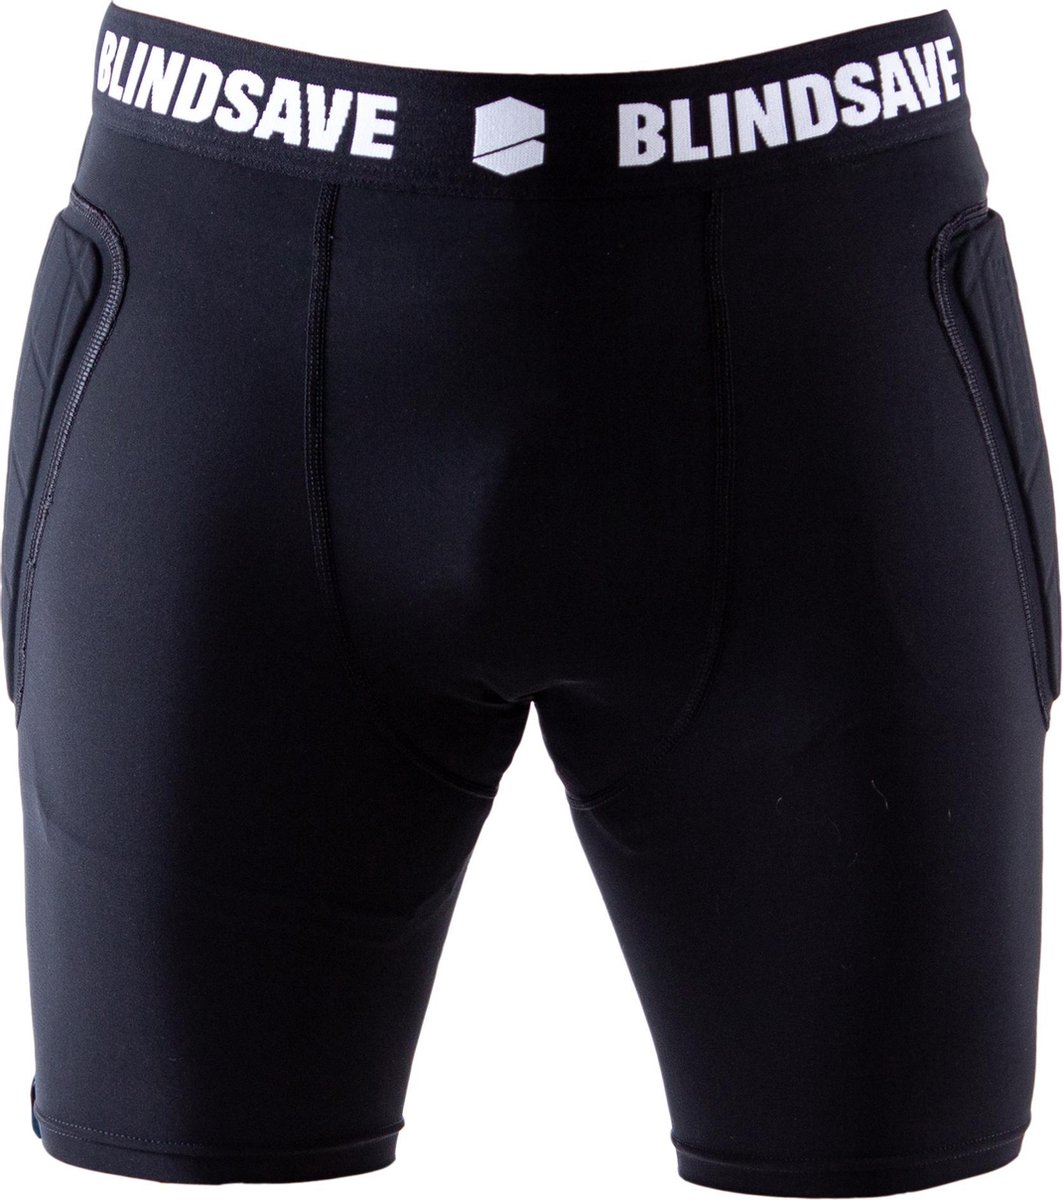 Blindsave Compressie Keeperbroek met bescherming | Padded Compression Goalkeeper Short | BAT Body Adjustment Technology | Zwart | Keeper broek | Maat 2XL